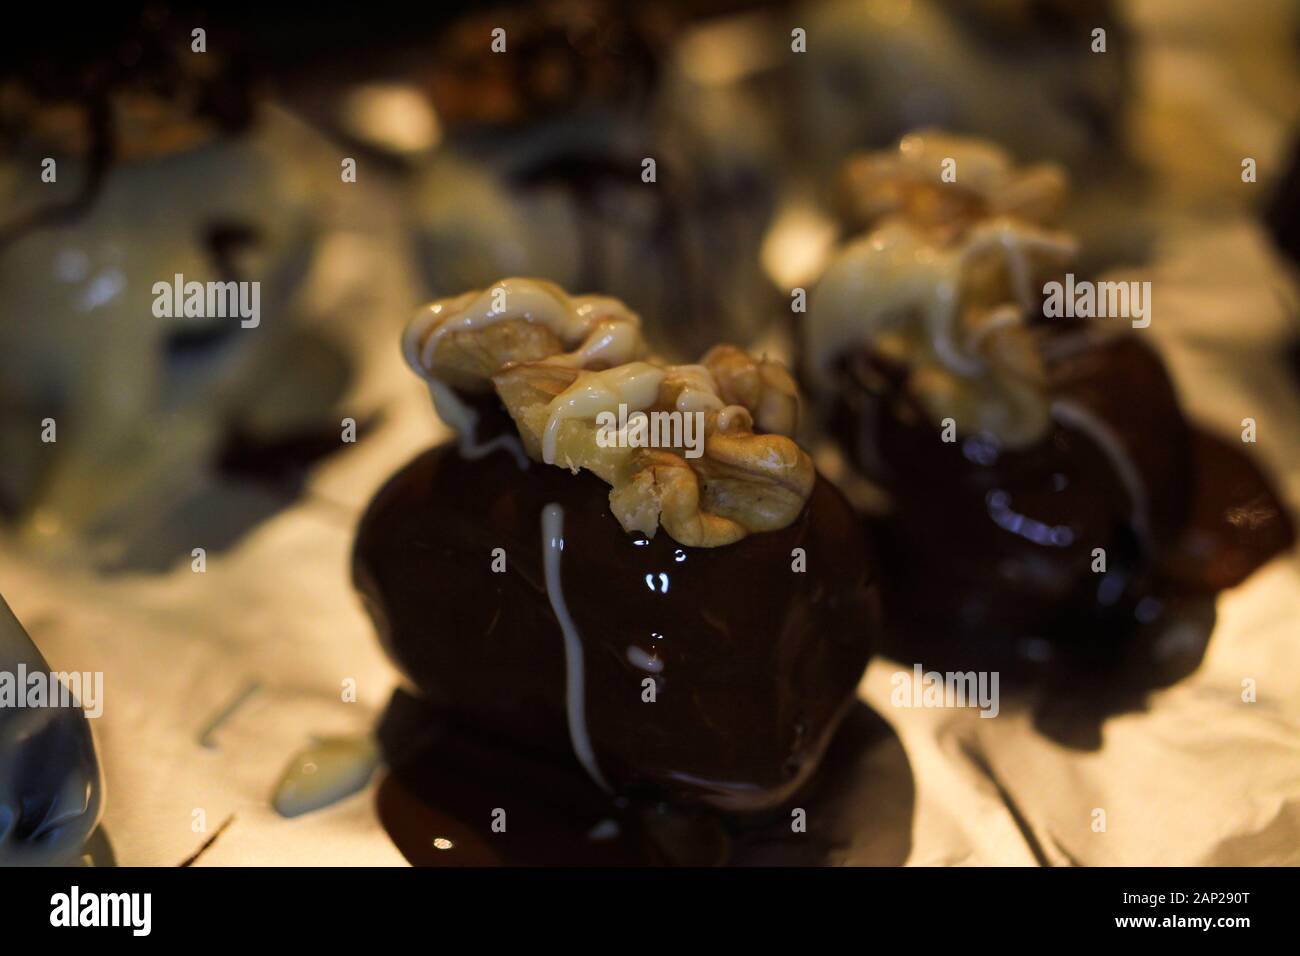 Makro Nahaufnahme der vielen isolierten frische hausgemachte weißer und brauner Schokolade Pralinen mit Termine Früchte, gefüllt mit Walnüssen dekoriert und Ausbreiten von Stockfoto